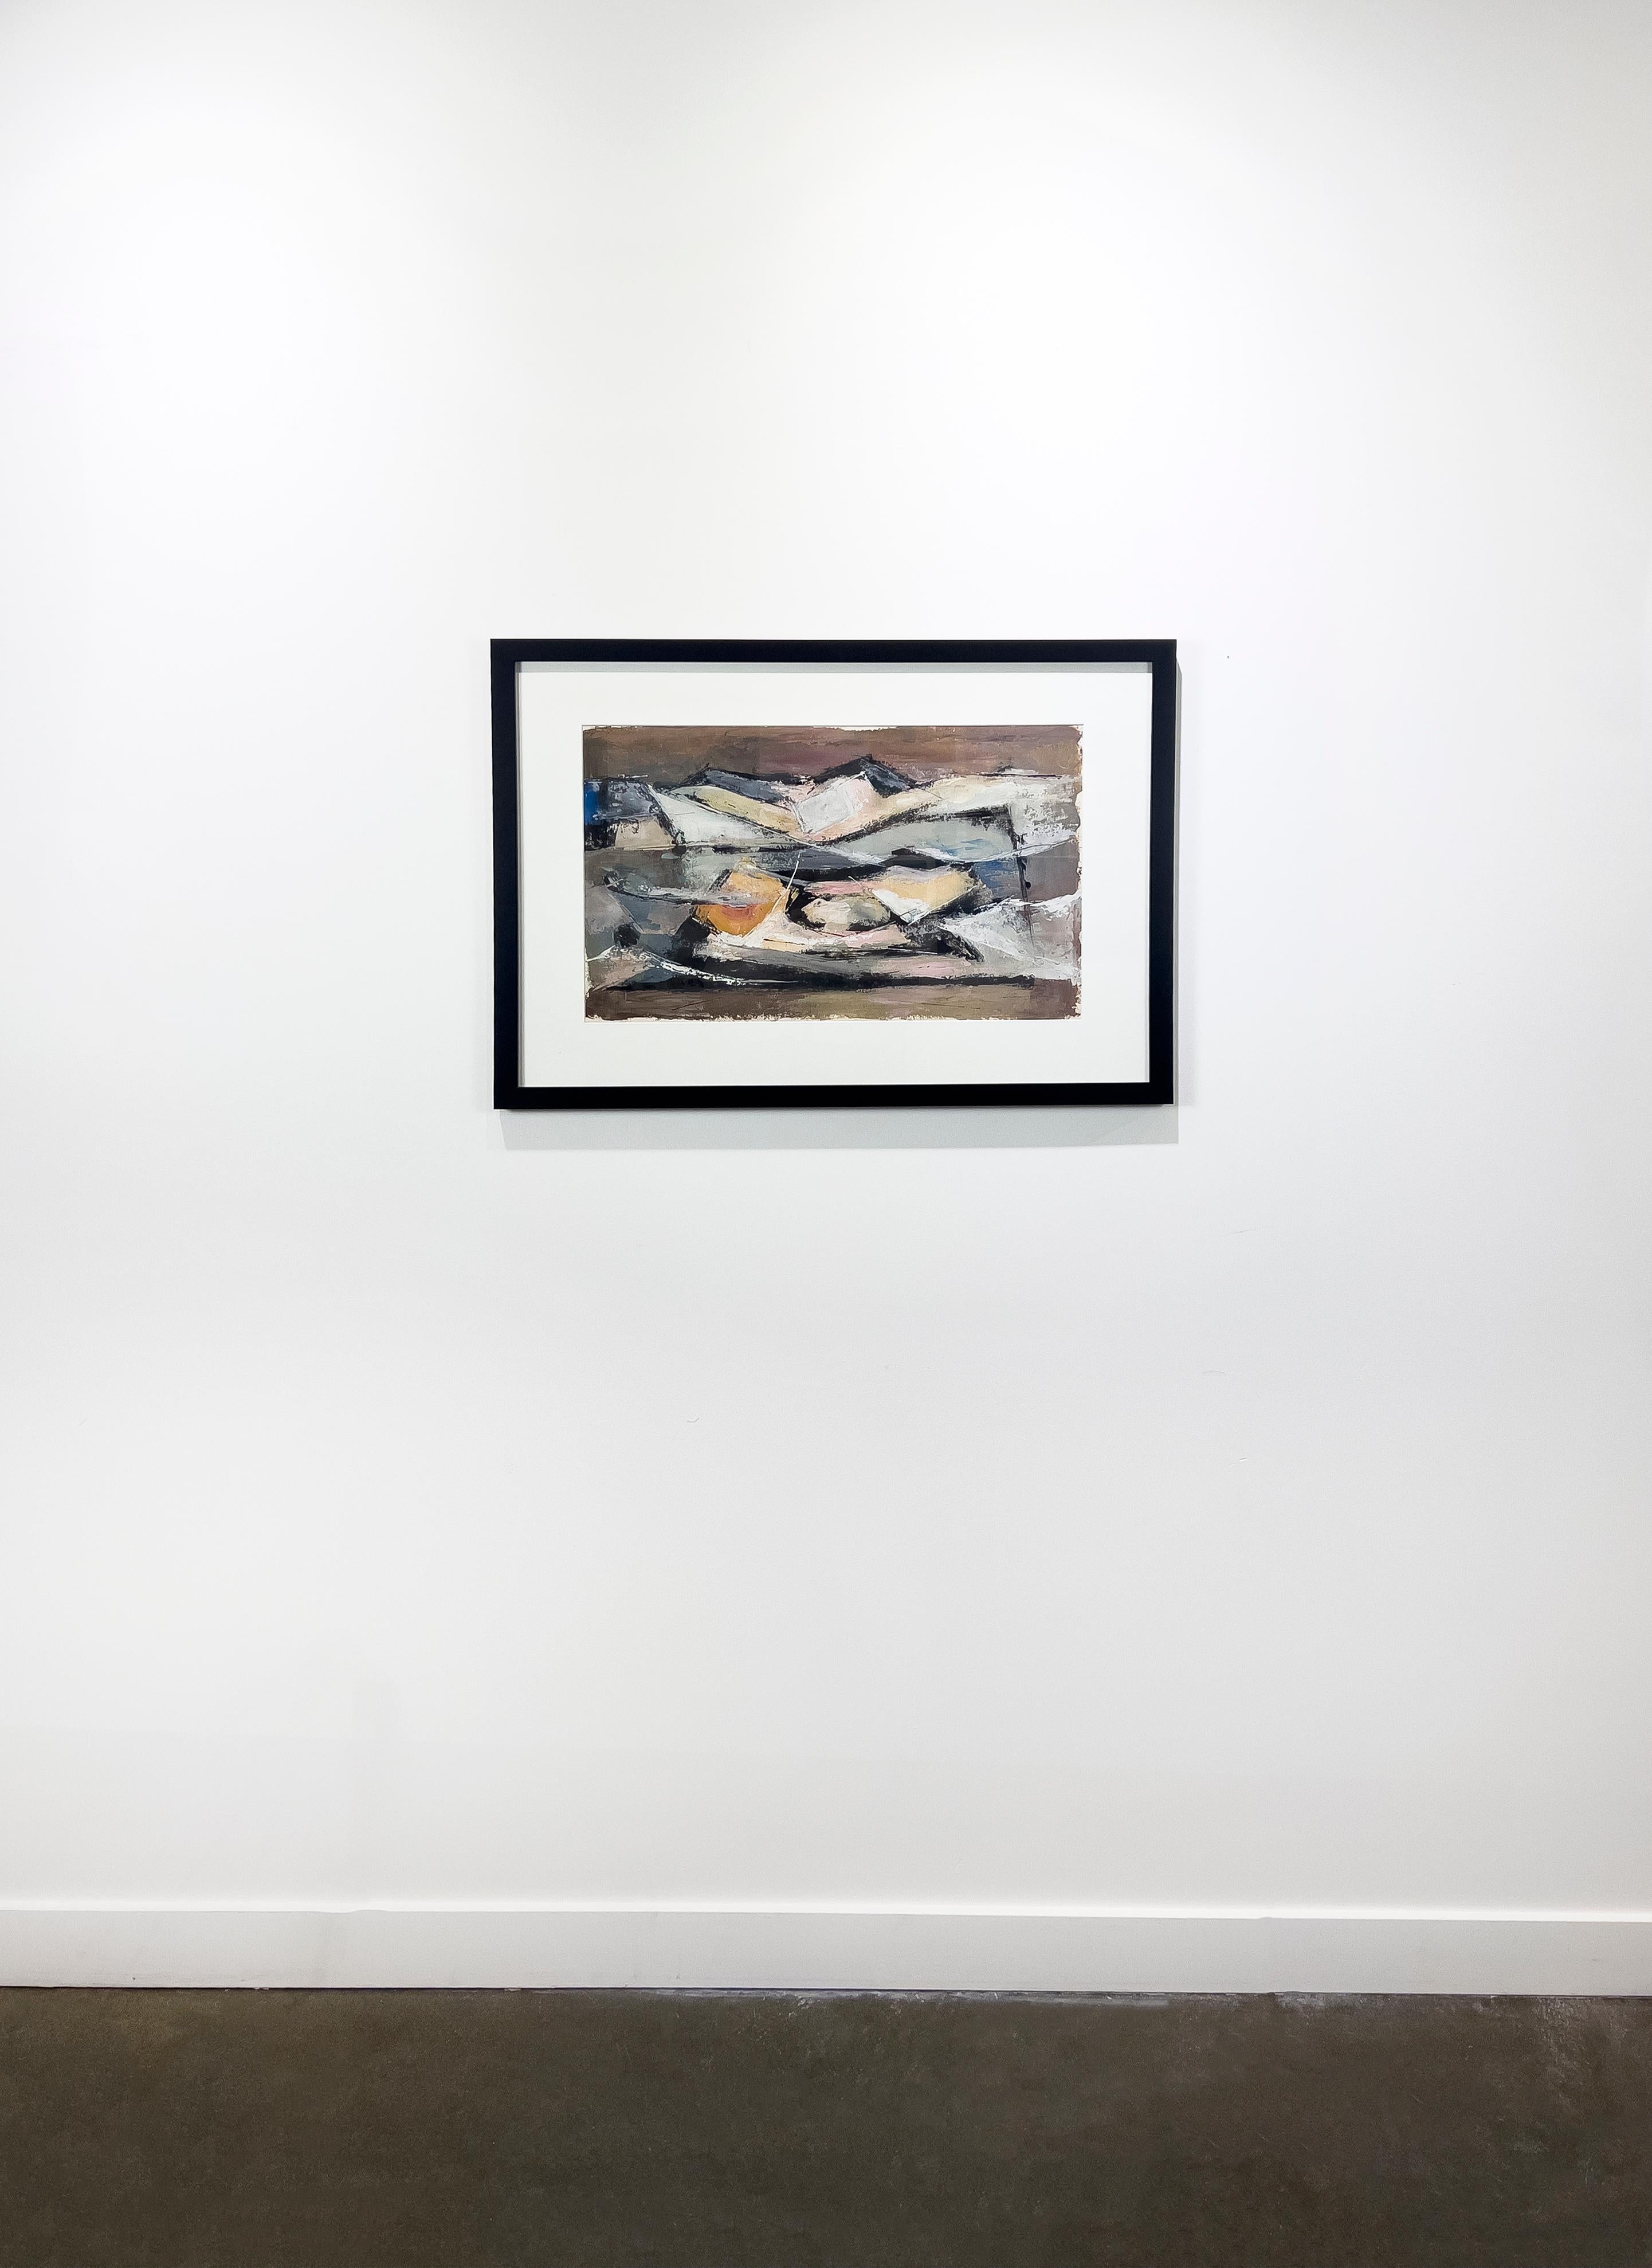 Cette peinture expressionniste abstraite moderne de Stanley Bate présente une palette sourde et terreuse aux accents chaleureux. La peinture elle-même est réalisée à la gouache sur papier et mesure 13